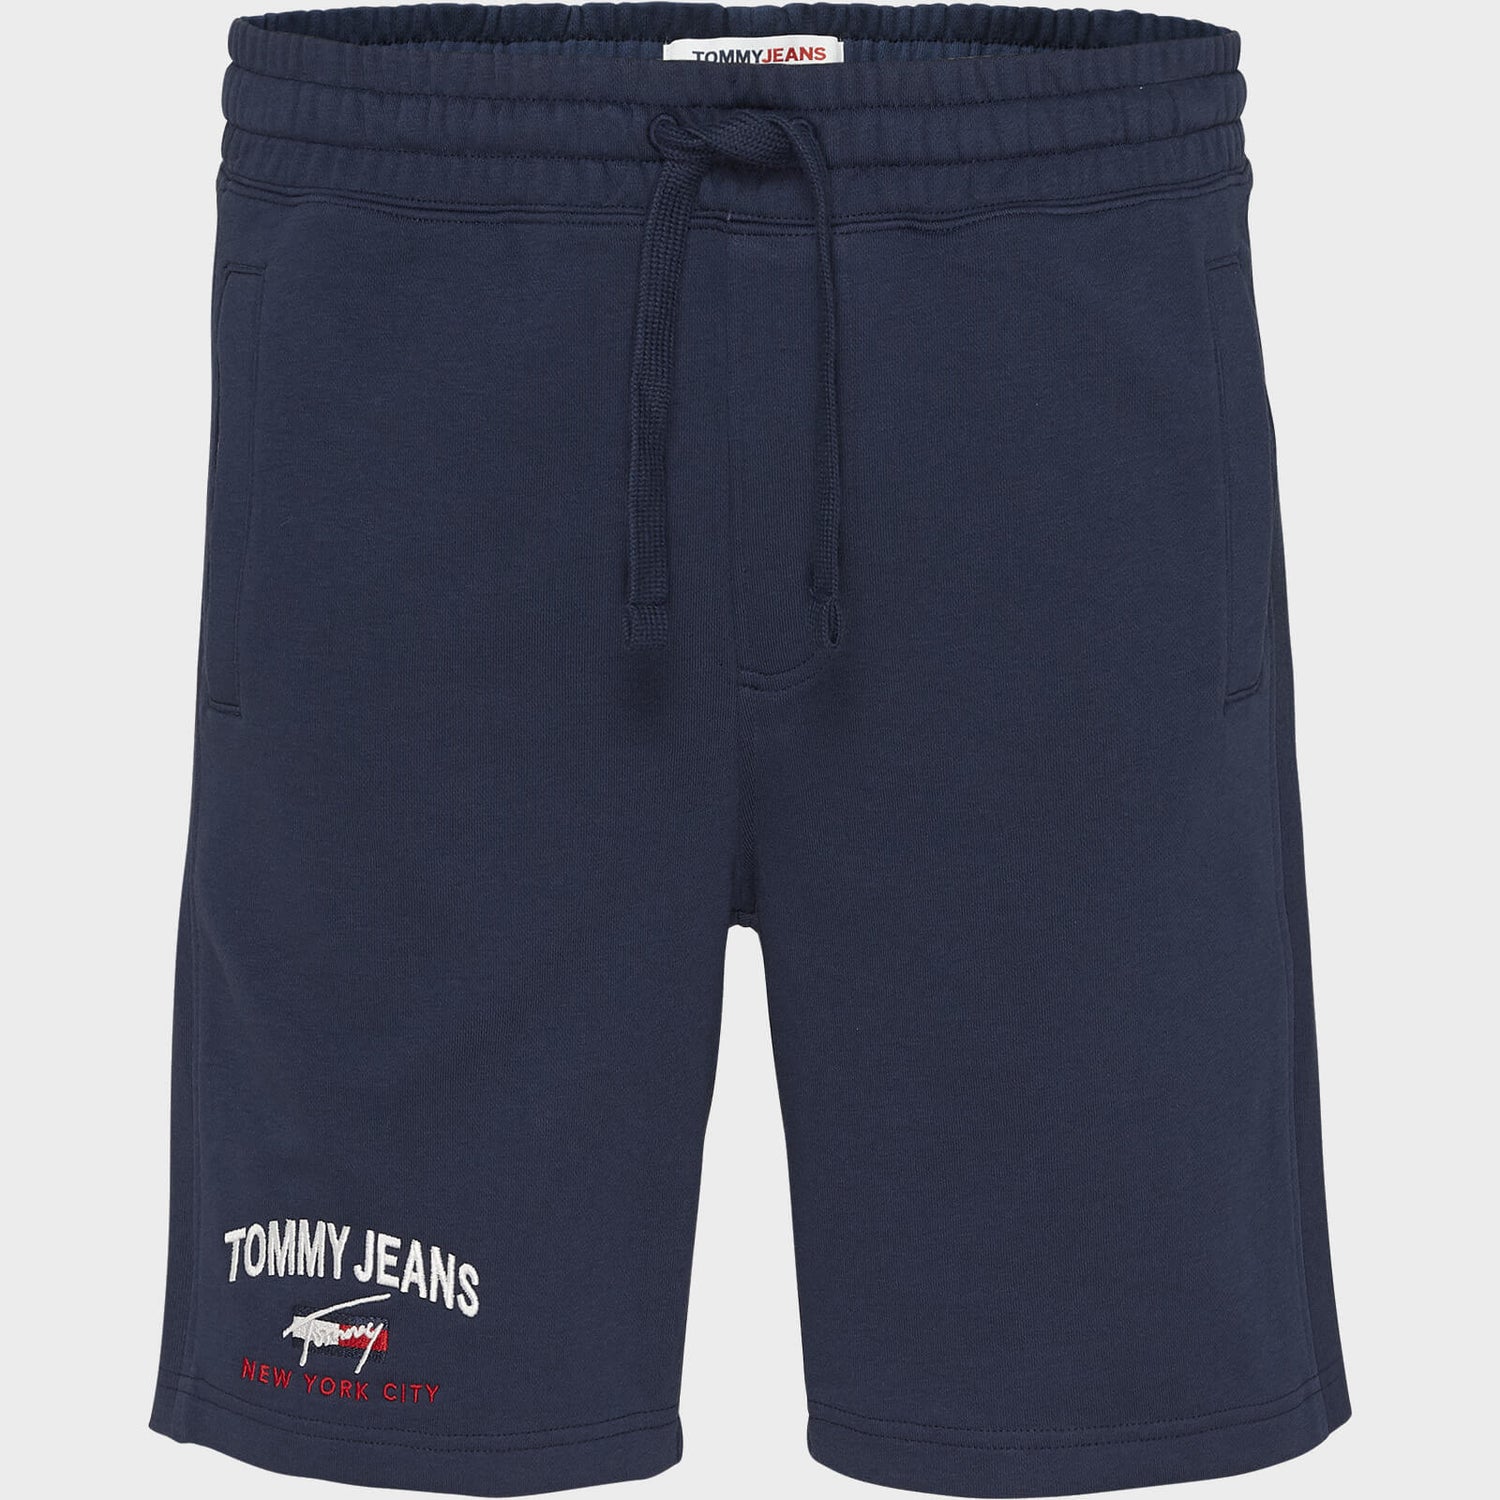 Tommy Jeans Men's Timeless Shorts - Twilight Navy